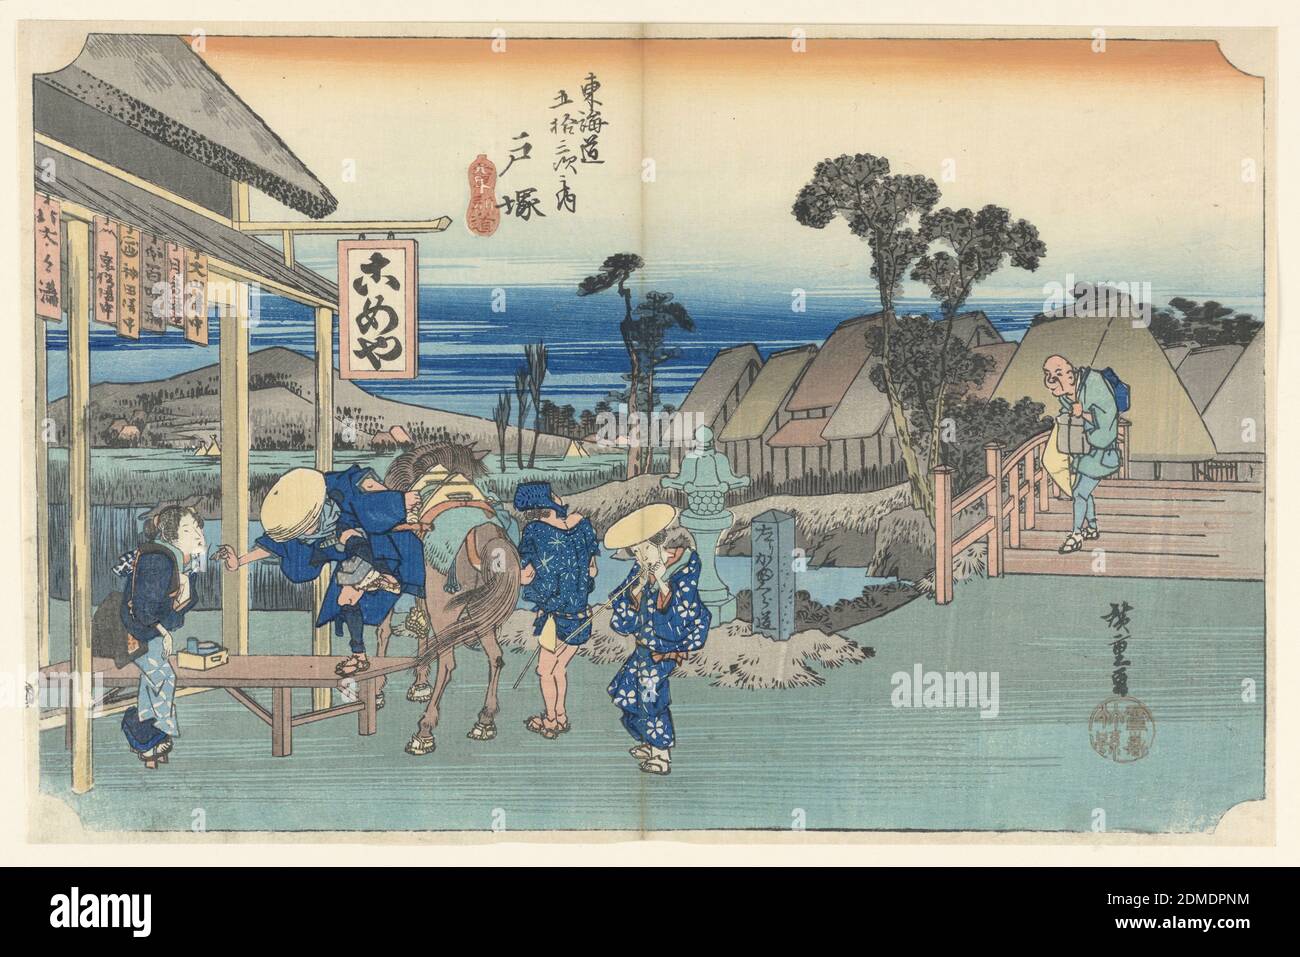 Totsuka Teahhouse, nelle cinquantatre stazioni di Tokaido Road (Tokaido Gojusan Tsugi-no Uchi), Ando Hiroshige, giapponese, 1797–1858, stampa a blocchi di legno in inchiostro colorato su carta, ecco una scena sprity di viaggiatori al di fuori di una casa da tè della città di Totsuka. Da Edo (Tokyo) a Totsuka all’epoca, era circa un giorno di viaggio. C'è un uomo che si alleva con impazienza dal suo cavallo. A sinistra di lui, una donna serva, finemente vestita, accoglie i visitatori dopo il loro lungo viaggio. C'è un uomo sulla destra, in piedi accanto al cavallo, è un portiere, con la sua schiena di fronte a noi. Foto Stock